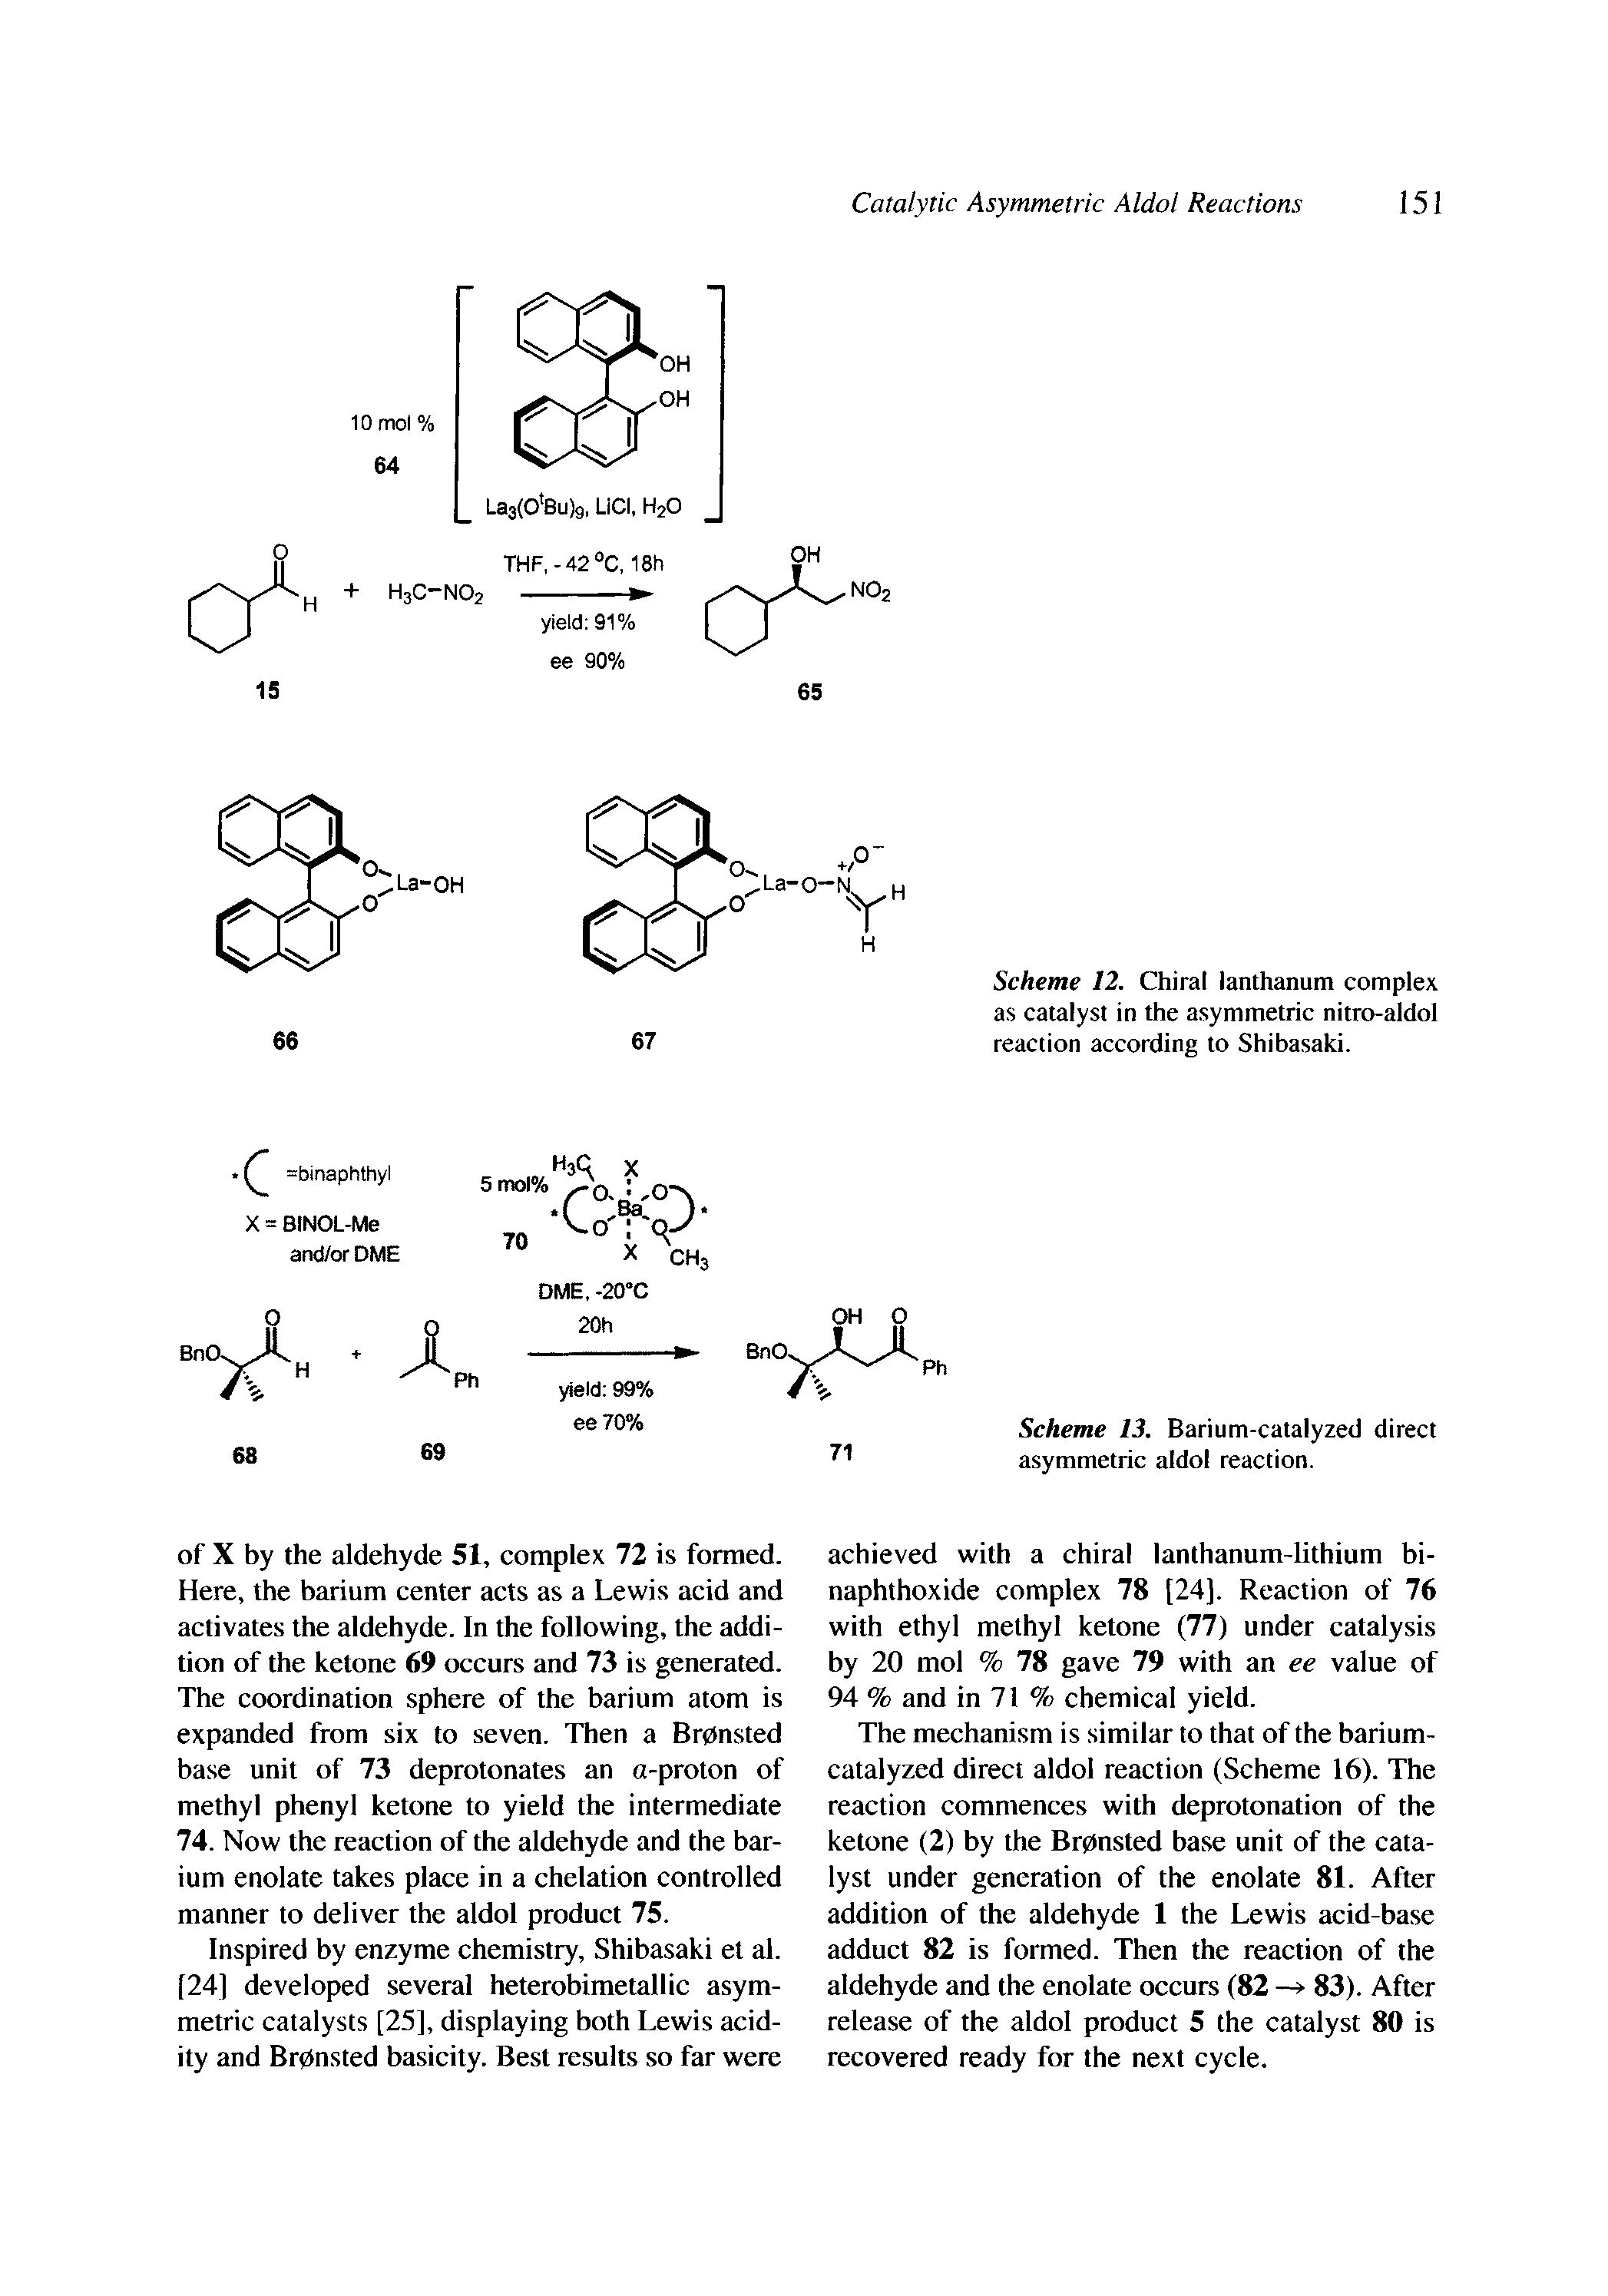 Scheme 13. Barium-catalyzed direct asymmetric aldol reaction.